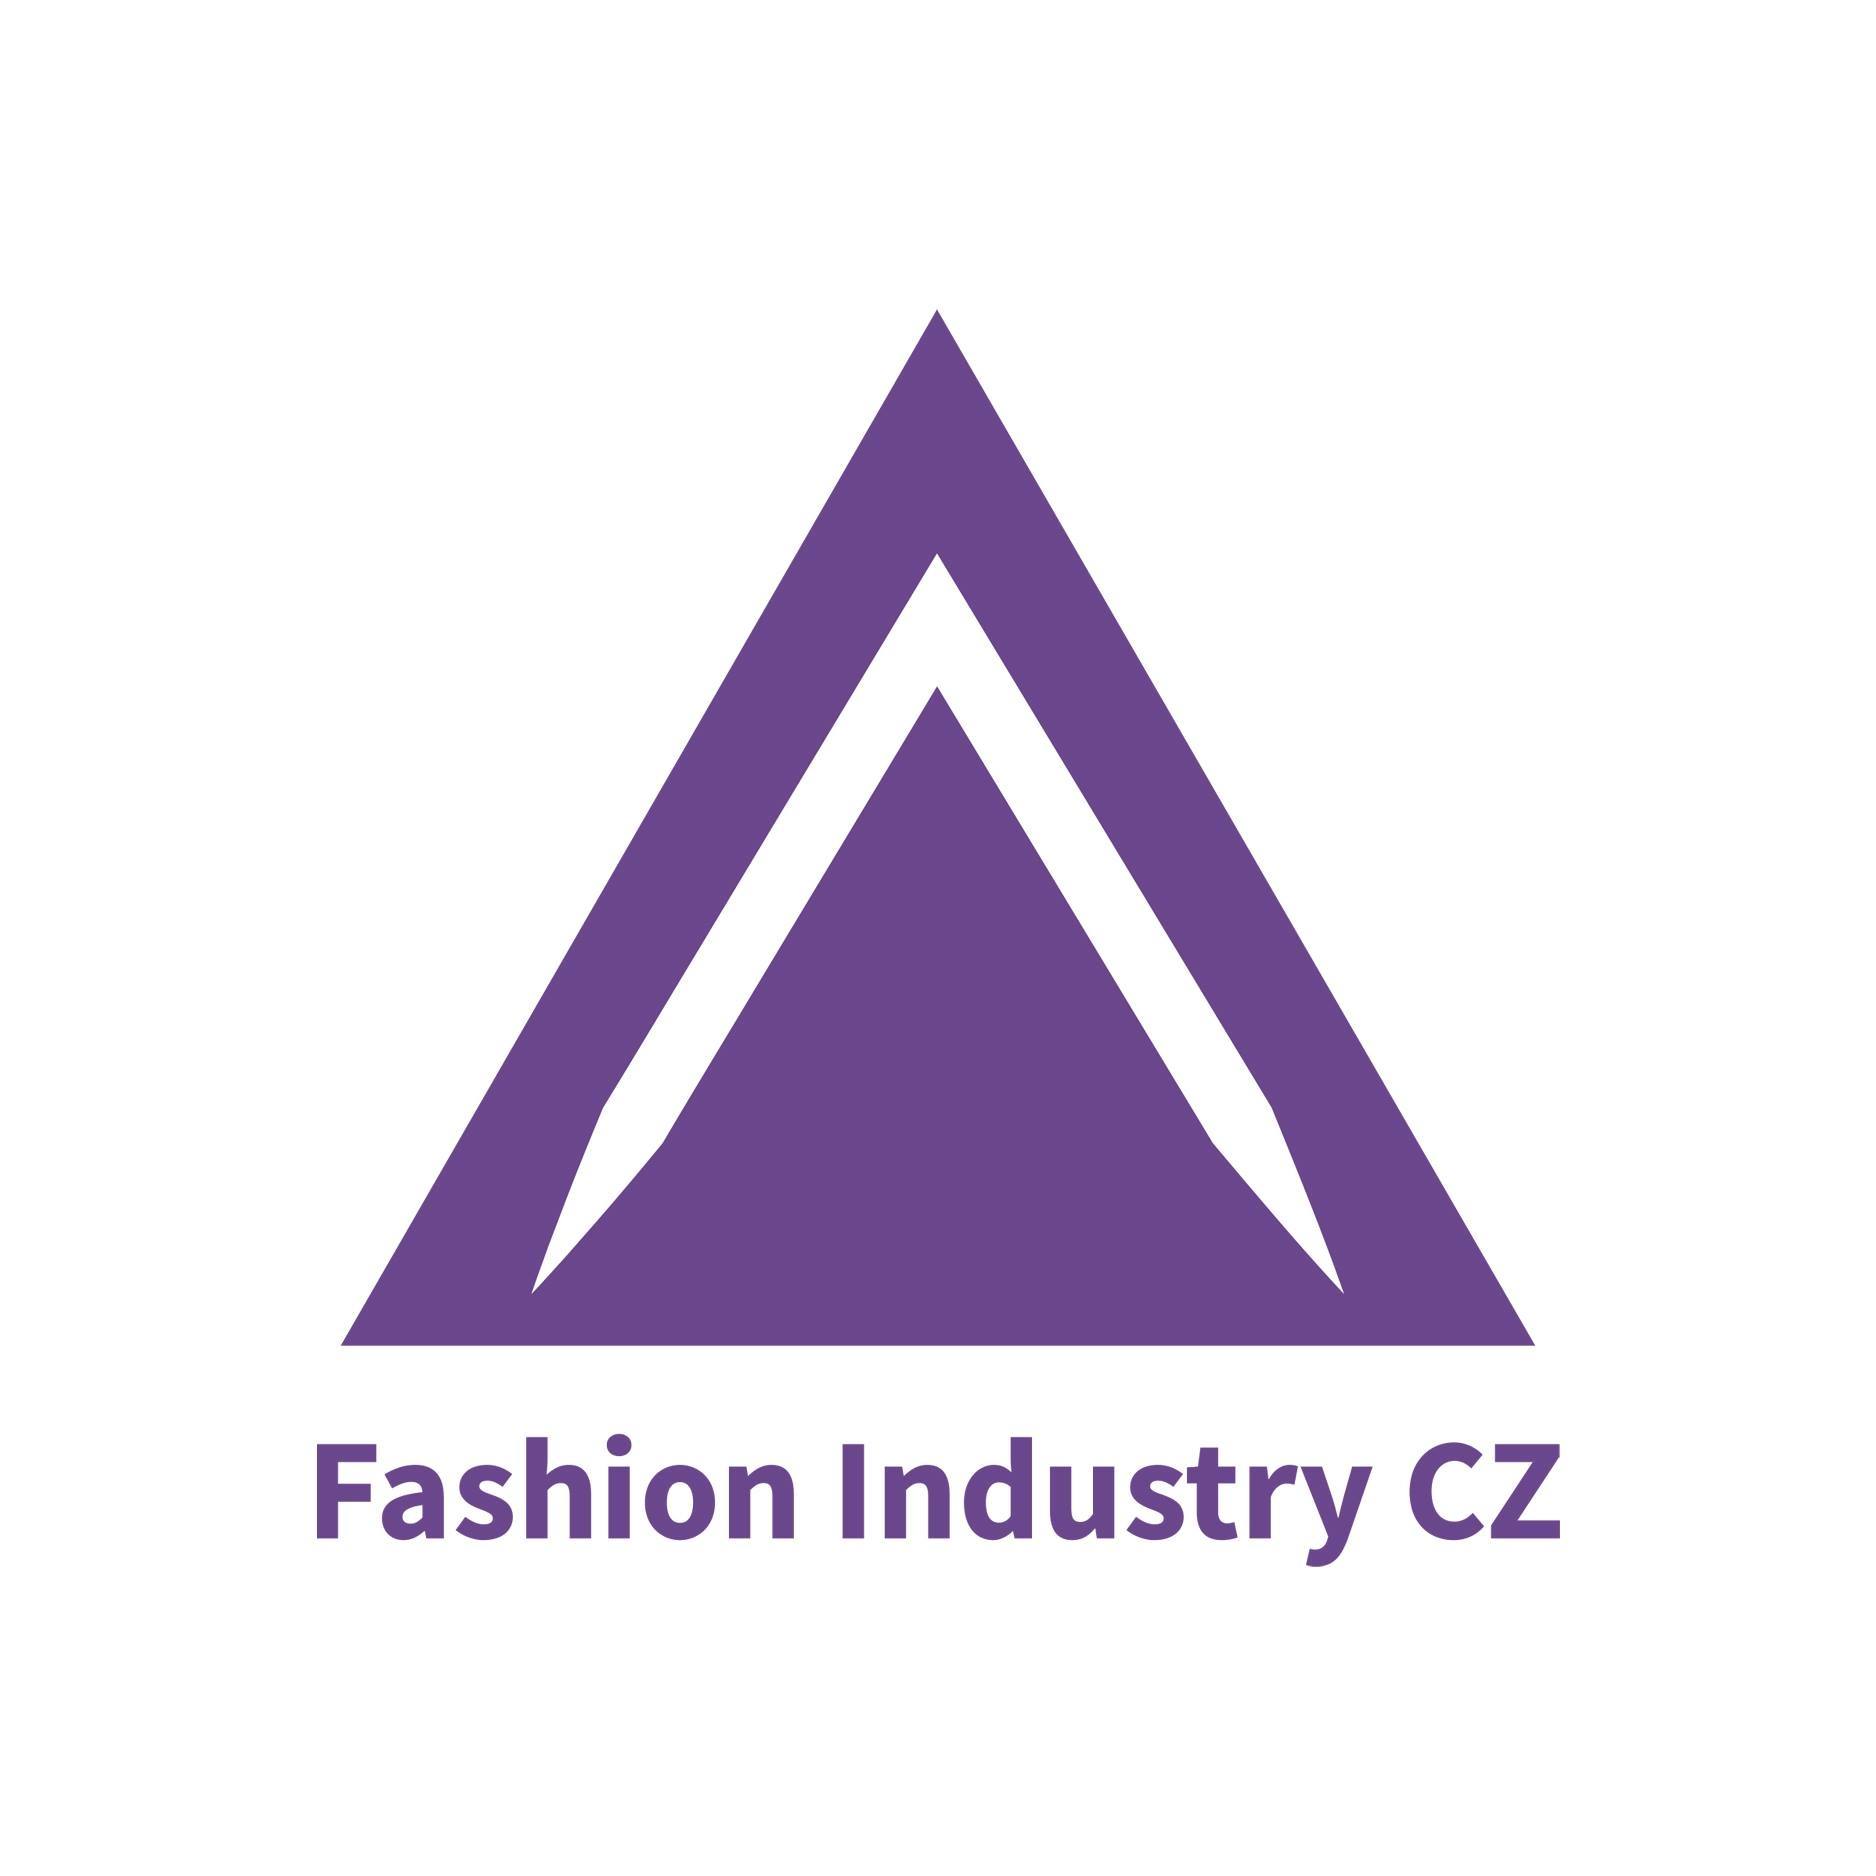 Aktuální dění okolo Fashion Industry CZ